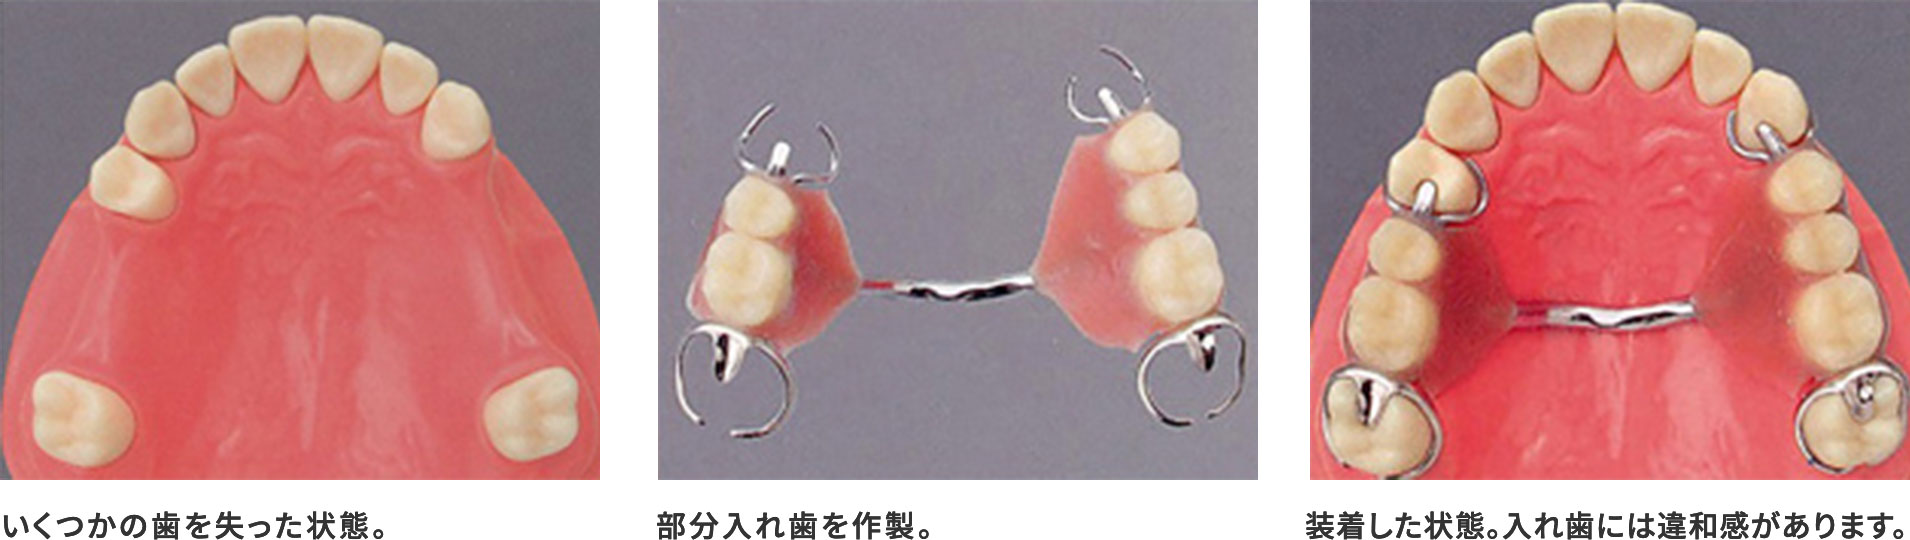 入れ歯による治療との違い